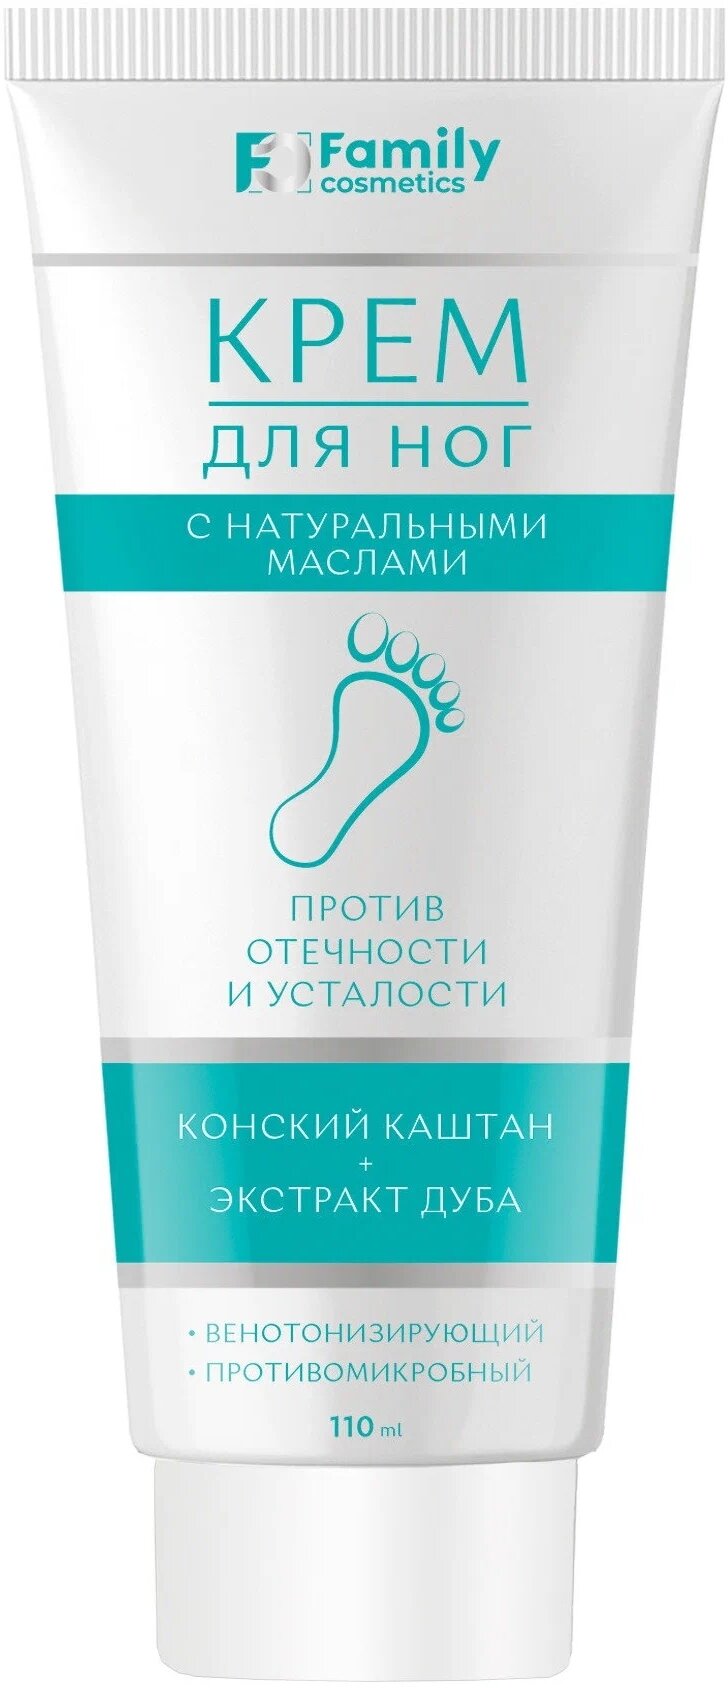 Family cosmetics Крем для ног против отечности и усталости, 110 мл, 110 г, 1 уп.